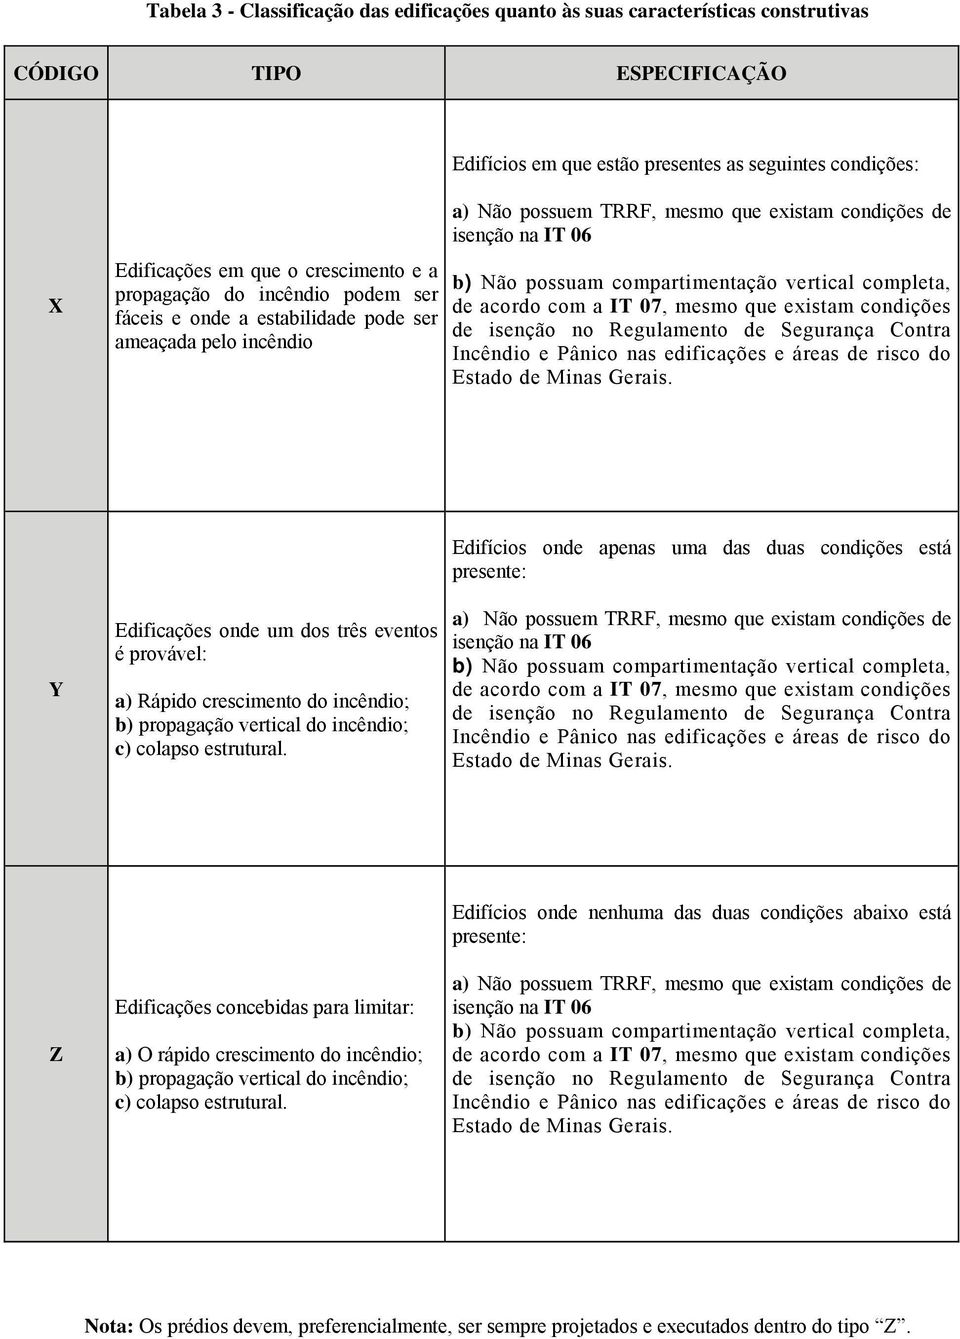 vertical completa, de acordo com a IT 07, mesmo que existam condições de isenção no Regulamento de Segurança Contra Incêndio e Pânico nas edificações e áreas de risco do Estado de Minas Gerais.